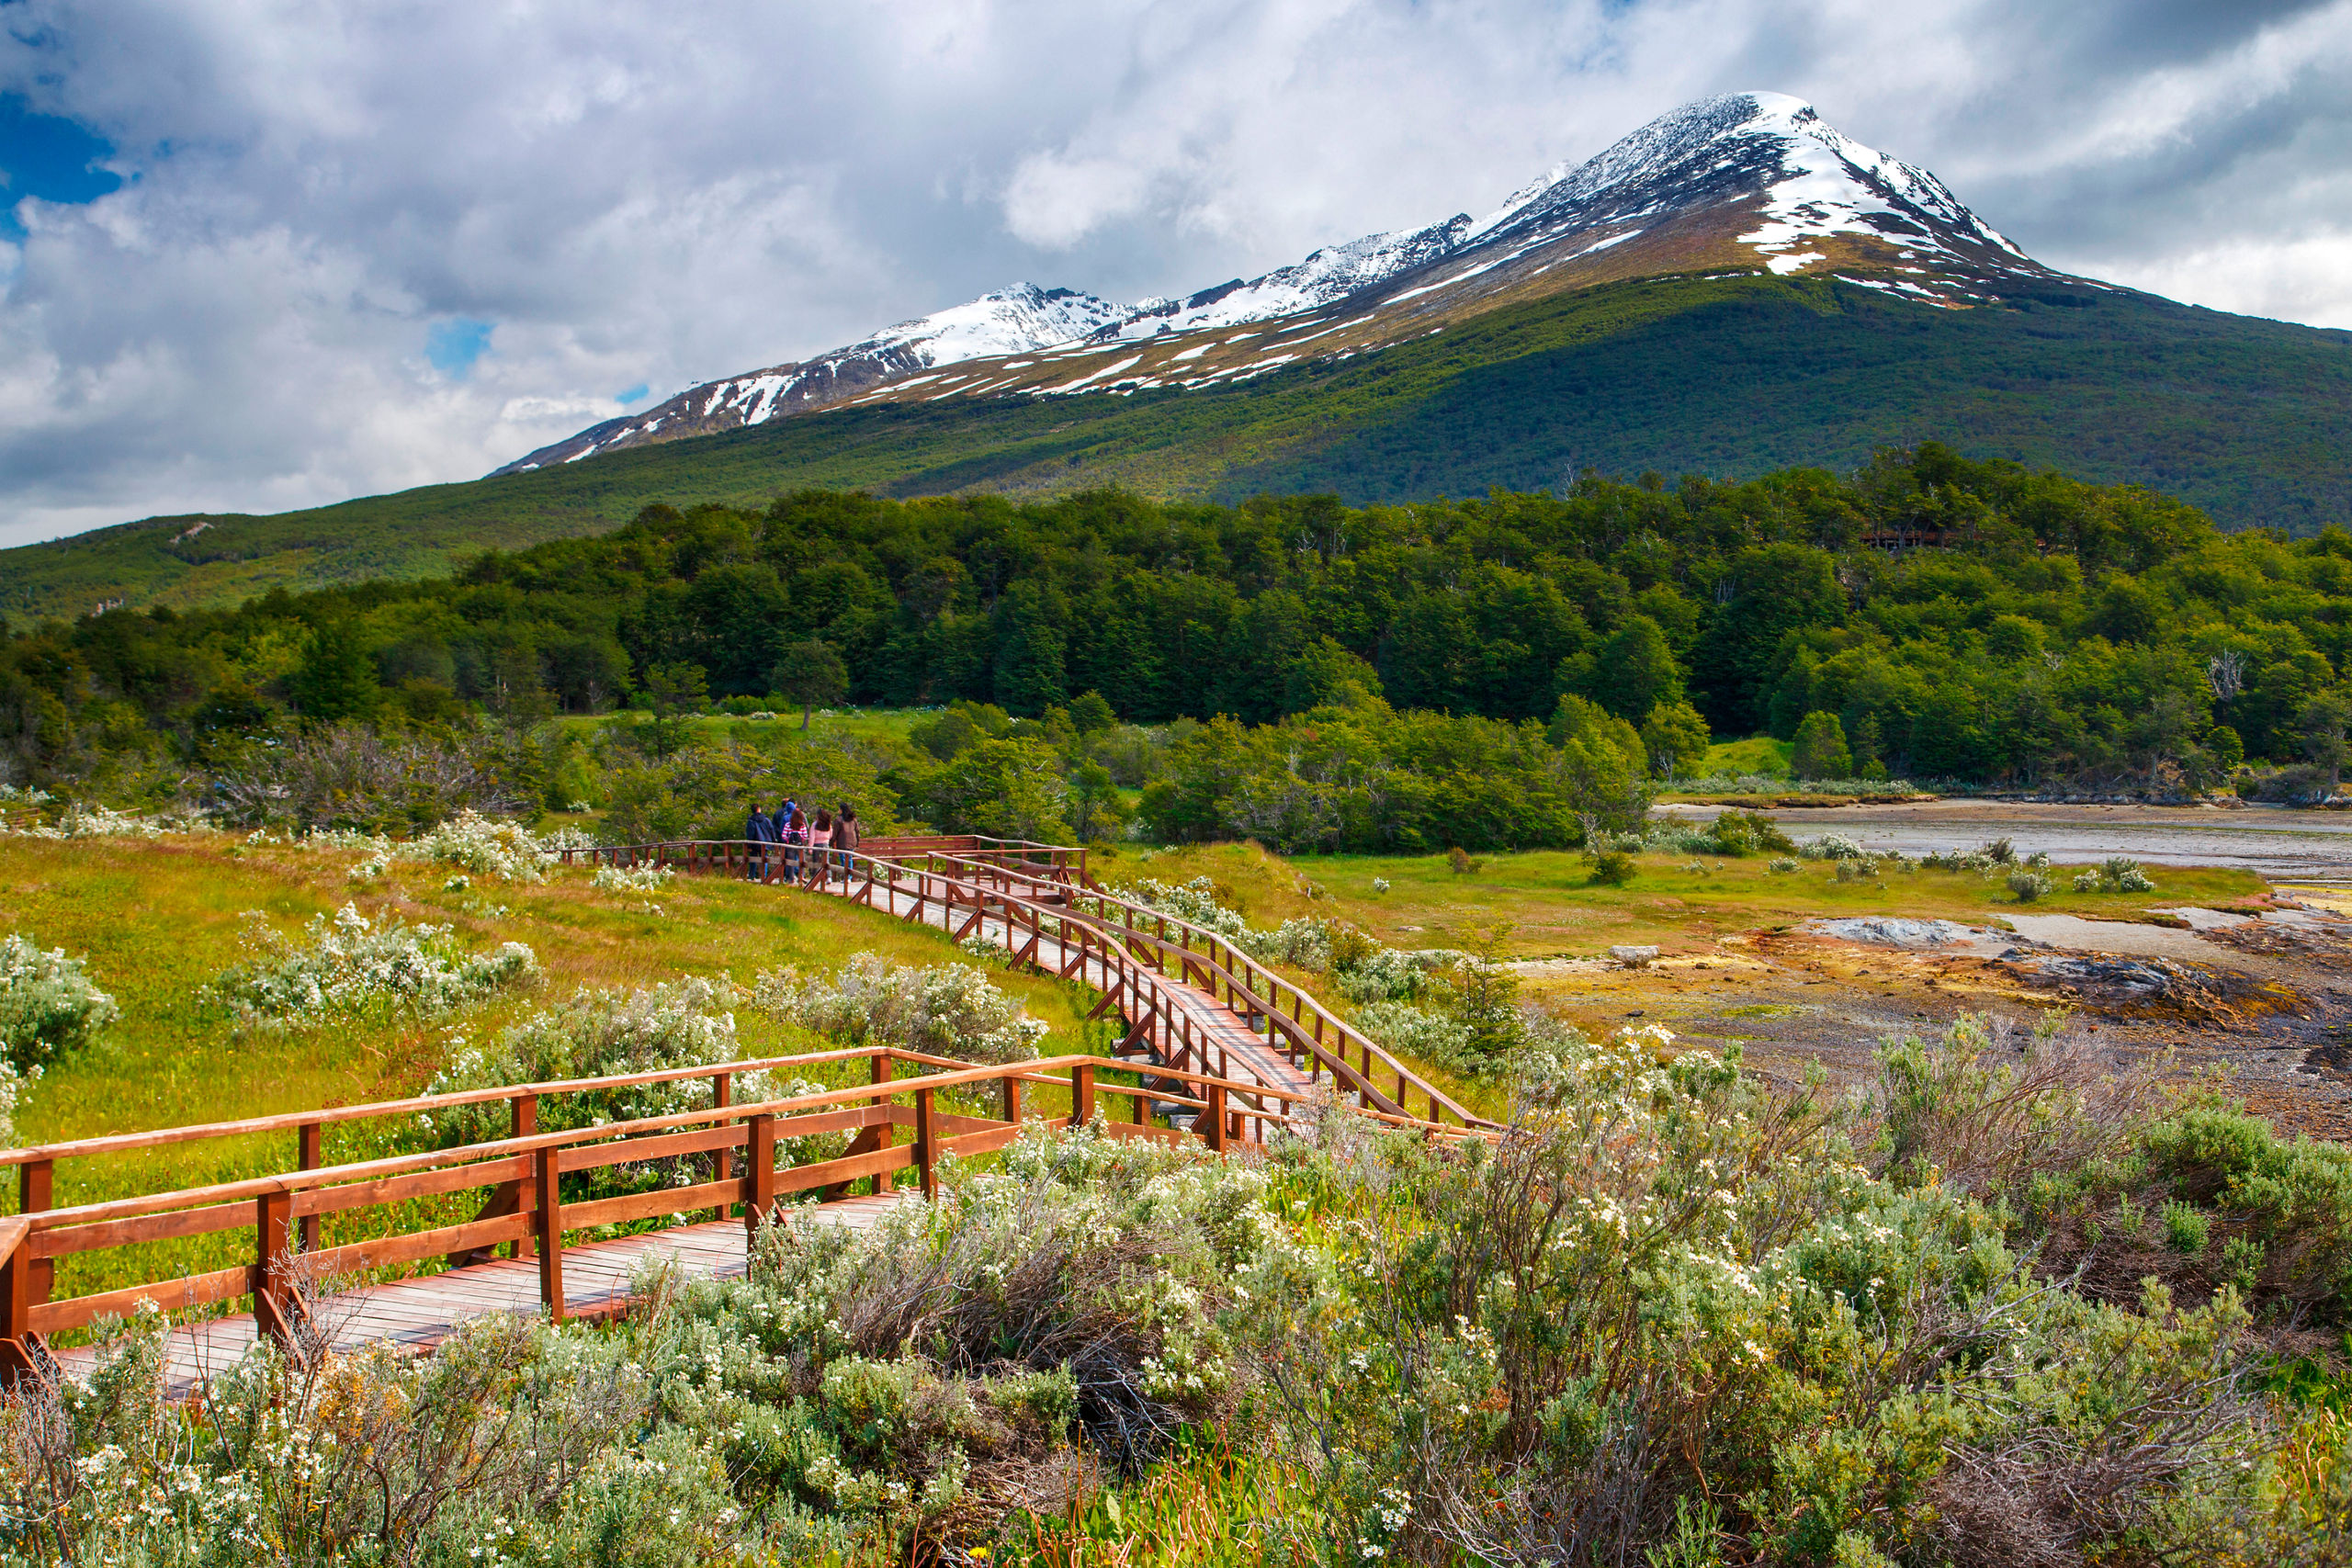 Tierra del Fuego National Park Ushuaia